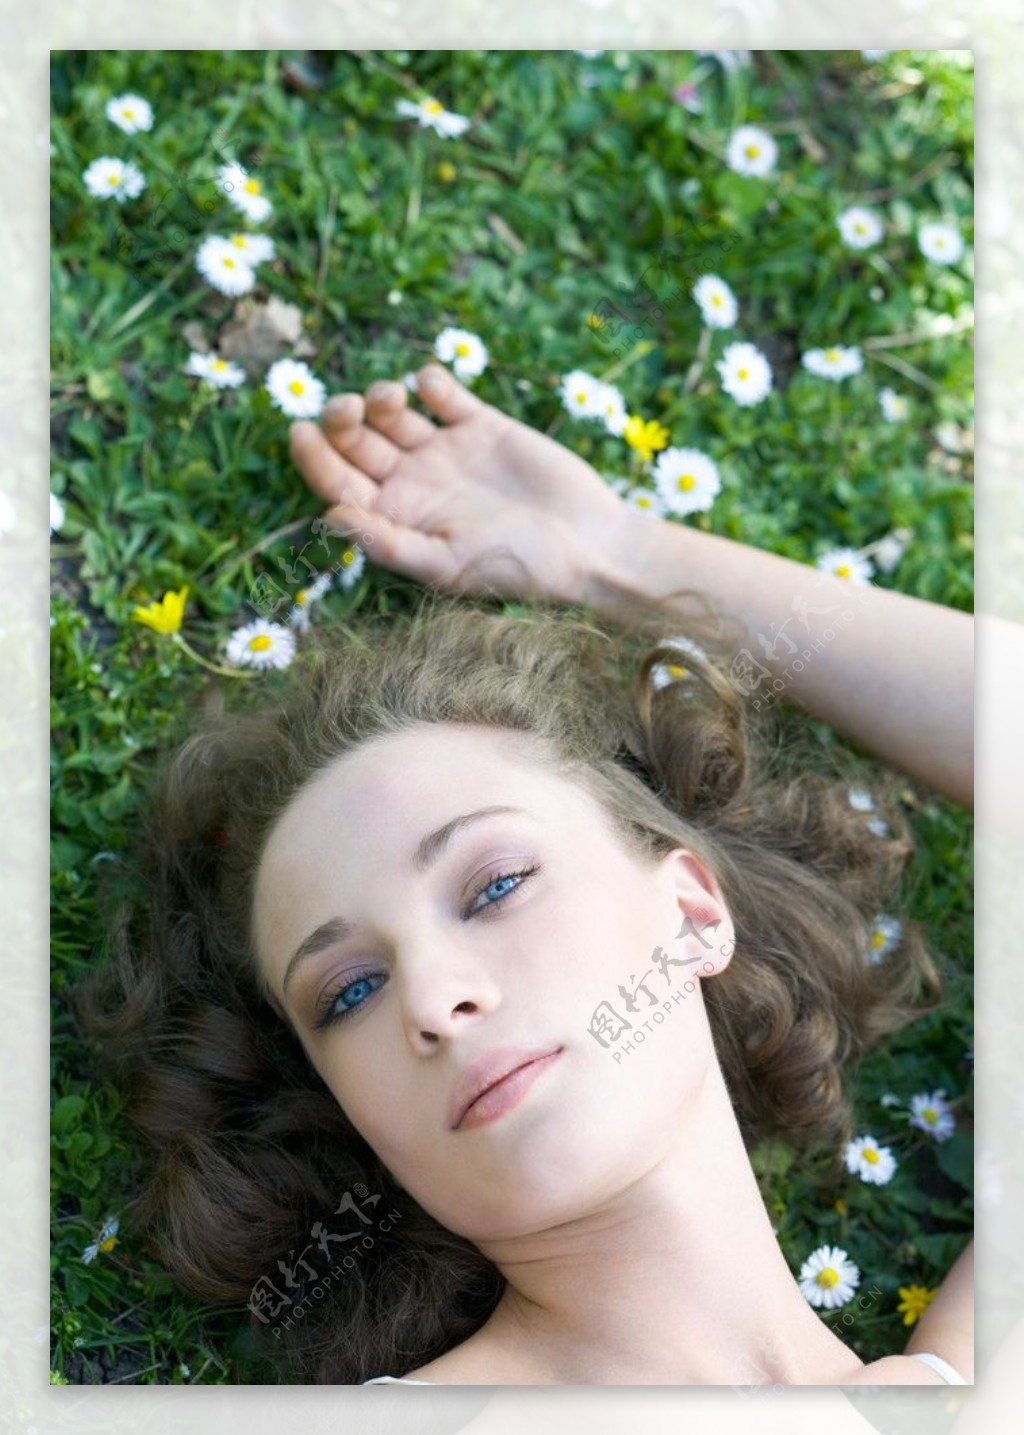 躺在绿草地上享受生活的美女图片